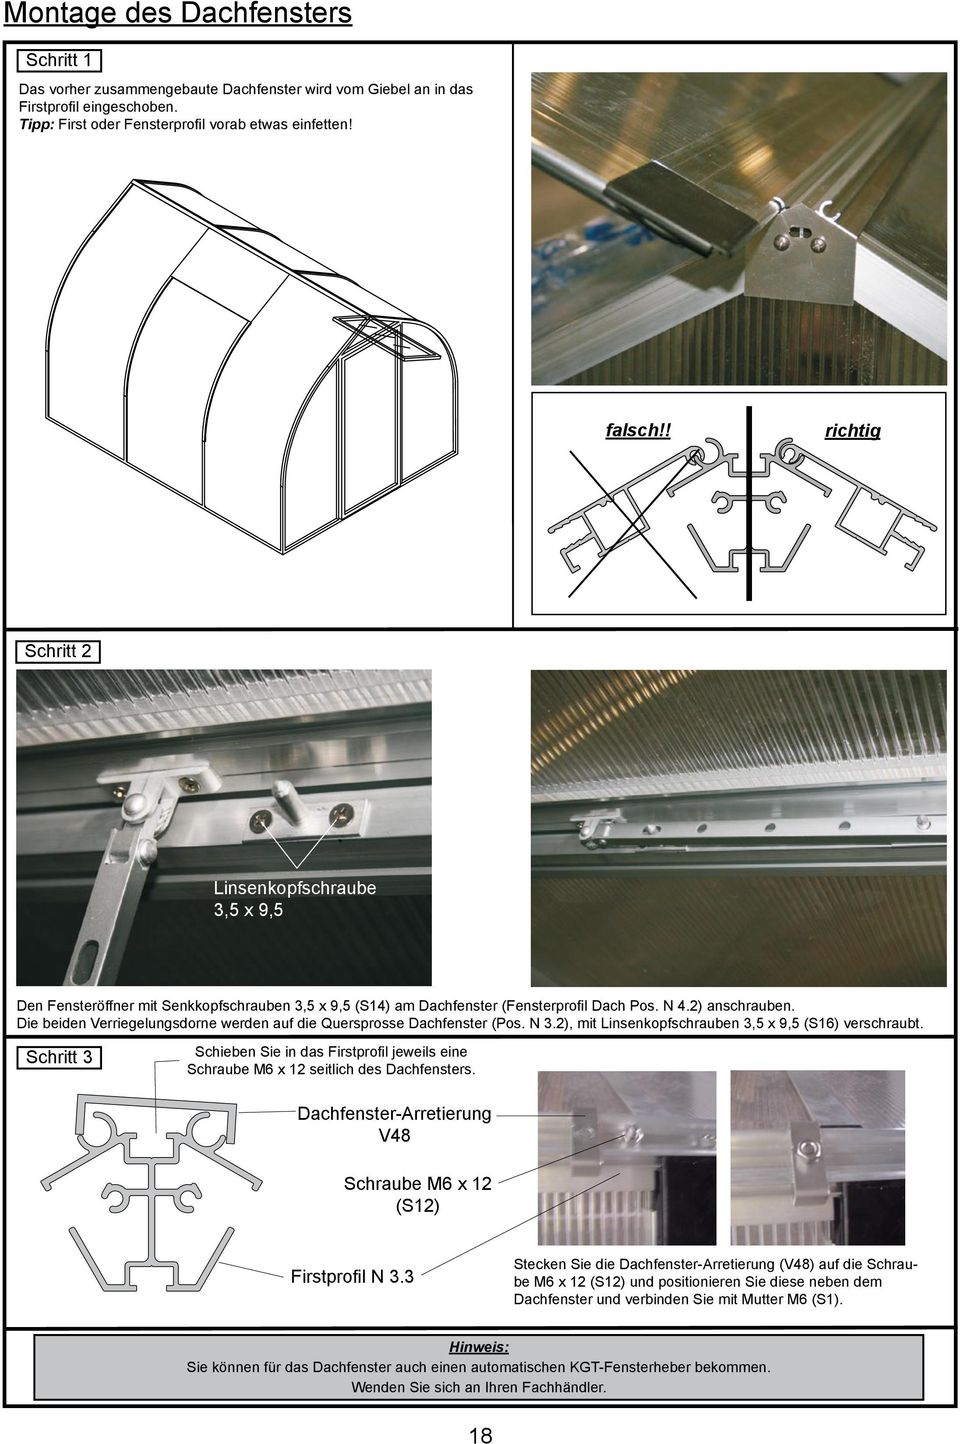 Die beiden Verriegelungsdorne werden auf die Quersprosse Dachfenster (Pos. N 3.), mit Linsenkopfschrauben 3,5 x 9,5 (S16) verschraubt.